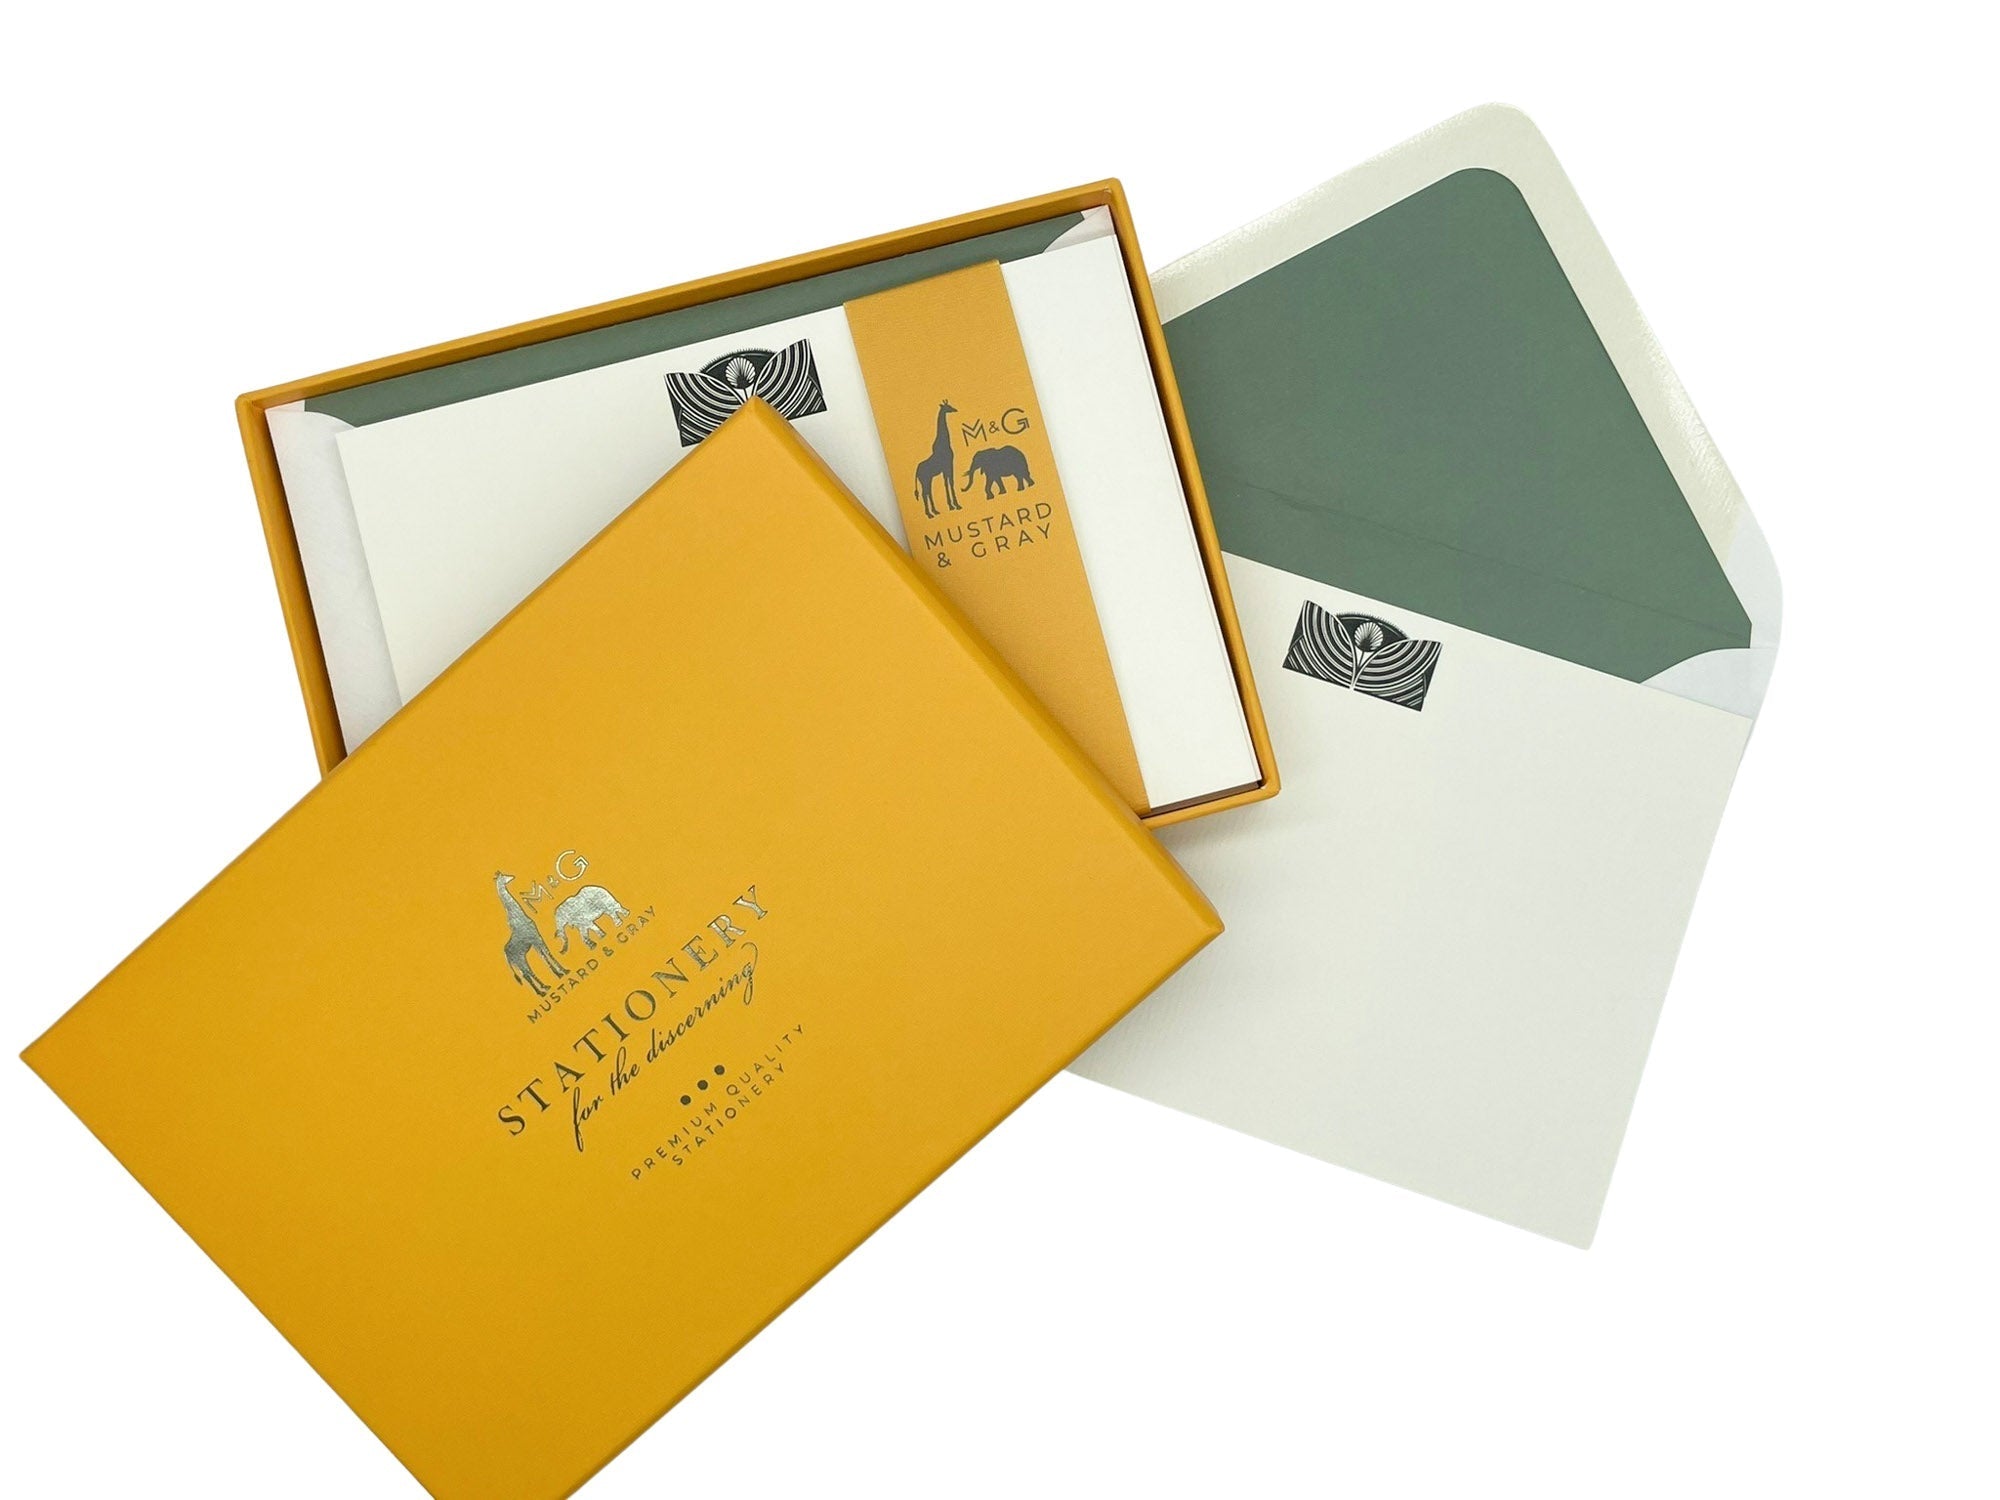 Hermes Gift Box Stationary Embossed Card Decor Set